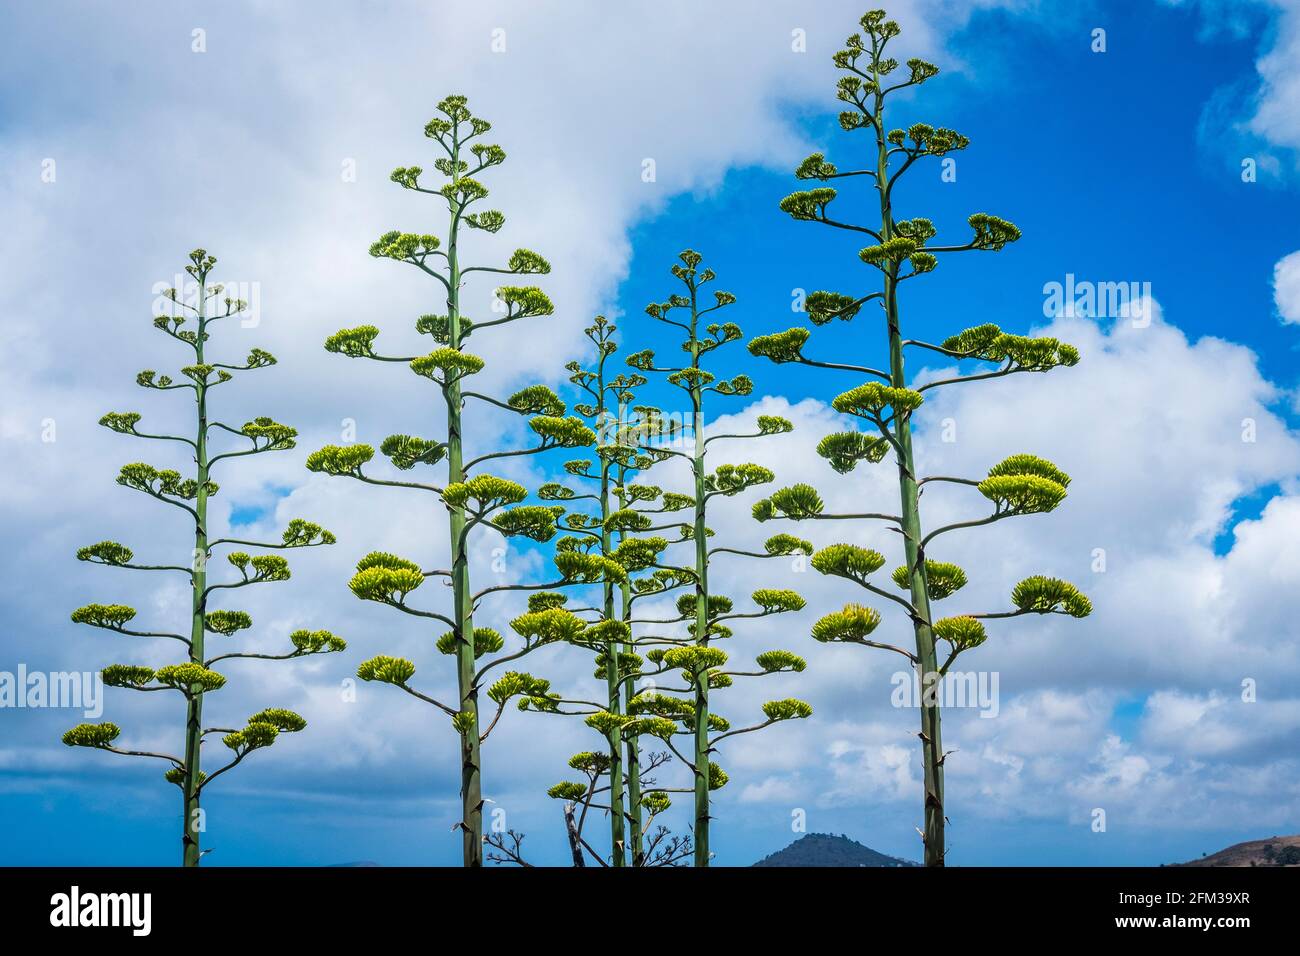 Gran Canaria, eine spanische Kanarische Insel vor der Nordwestküste von Afrika. Tiges d'agave en fleur avec ciel bleu et nuages. Jahrhundertpflanze Banque D'Images